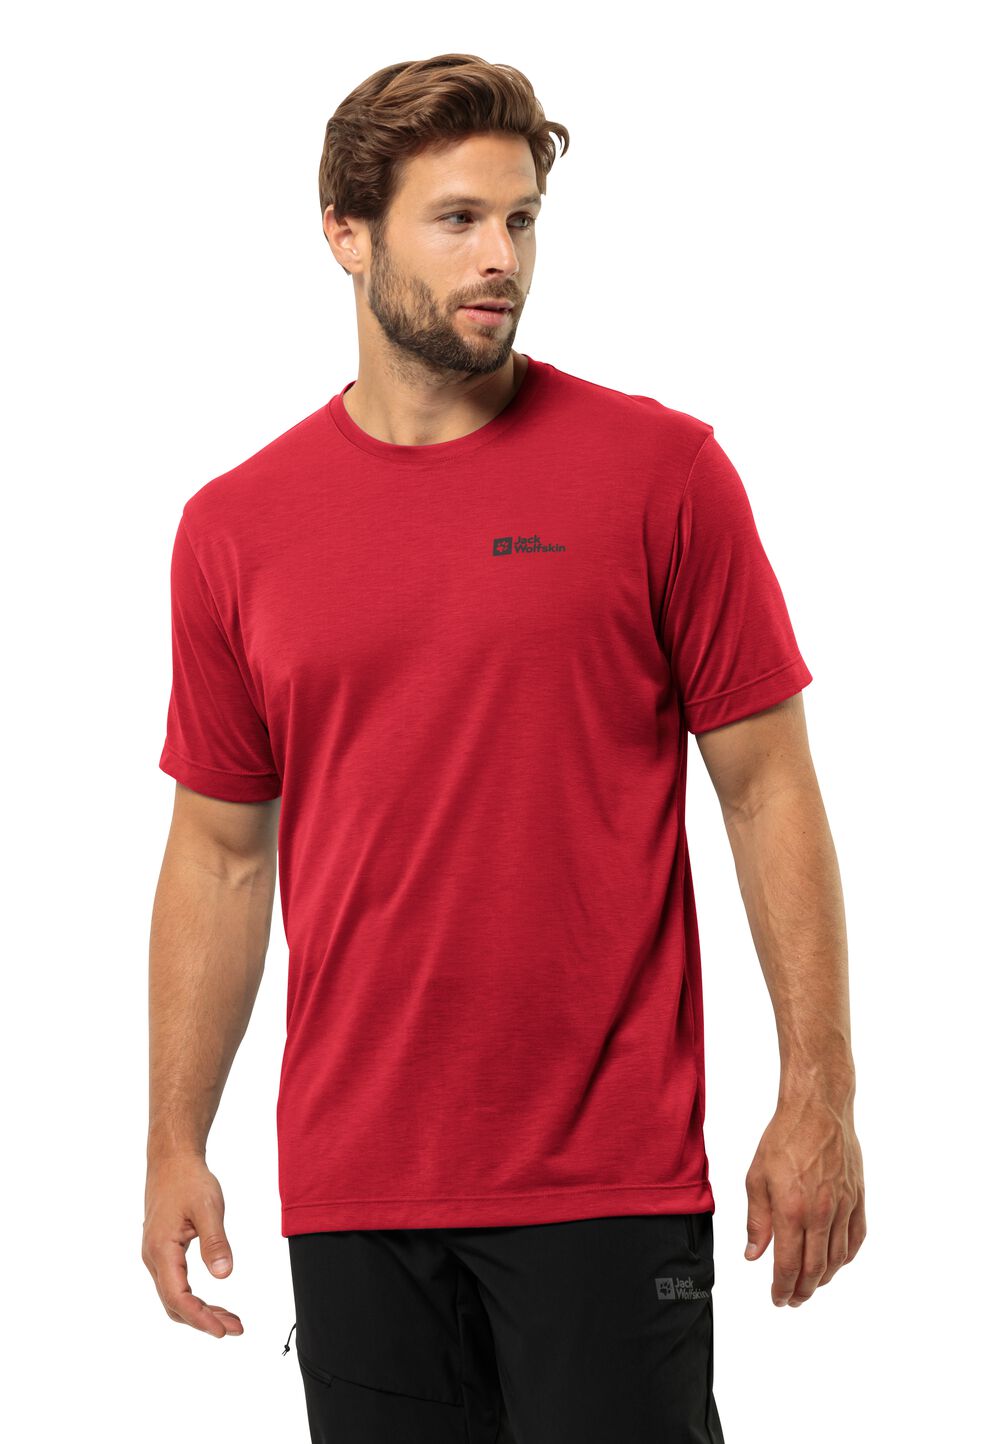 Jack Wolfskin Vonnan S S T-Shirt Men Functioneel shirt Heren XL rood red glow